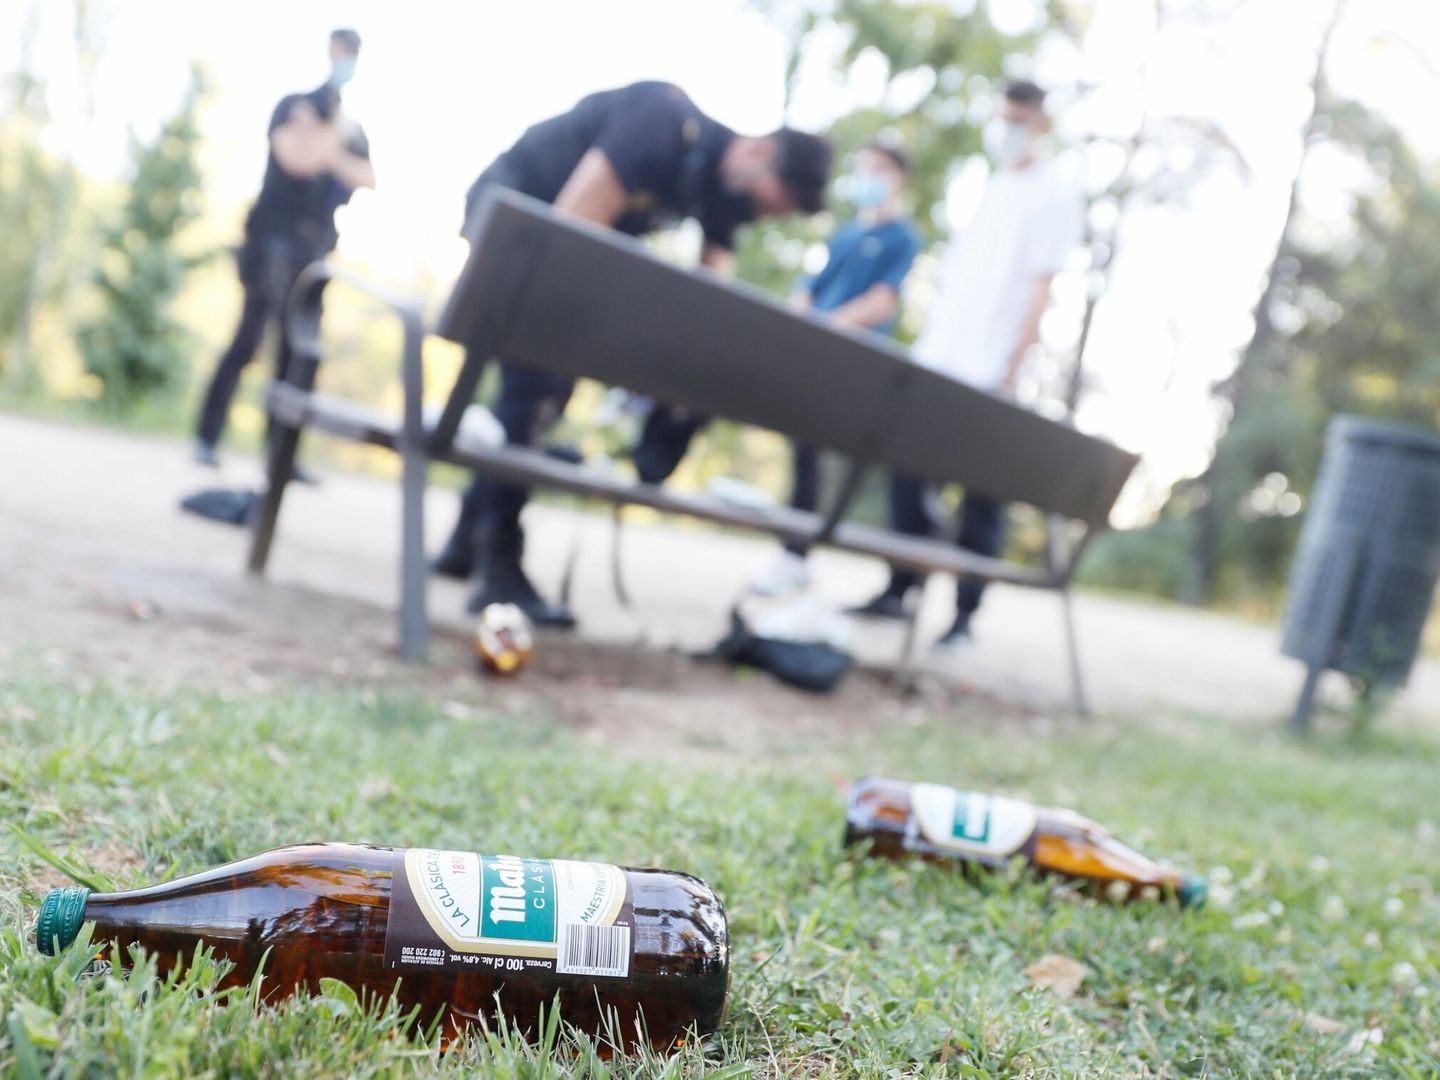 Jóvenes sorprendidos bebiendo alcohol en el Parque del Oeste de Madrid. (EFE/Mariscal)